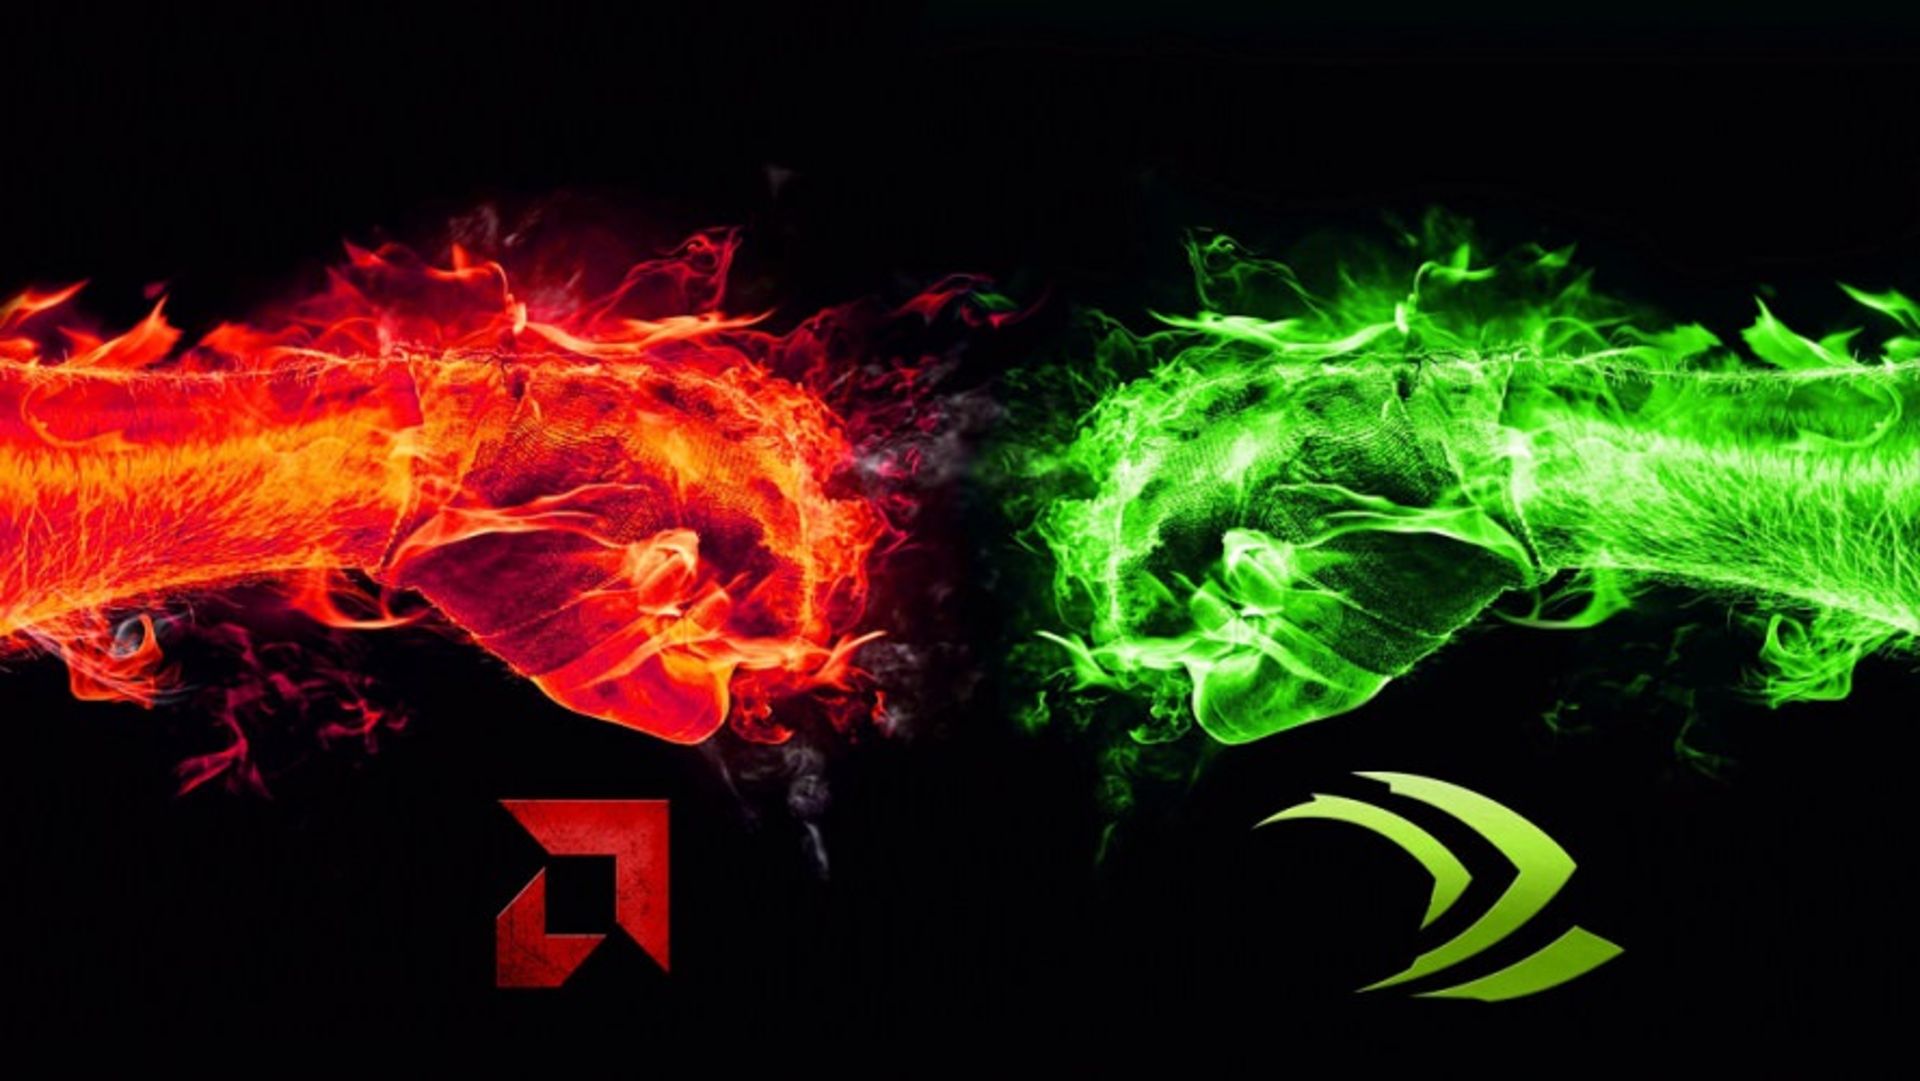 مرجع متخصصين ايران AMD vs Nvidia